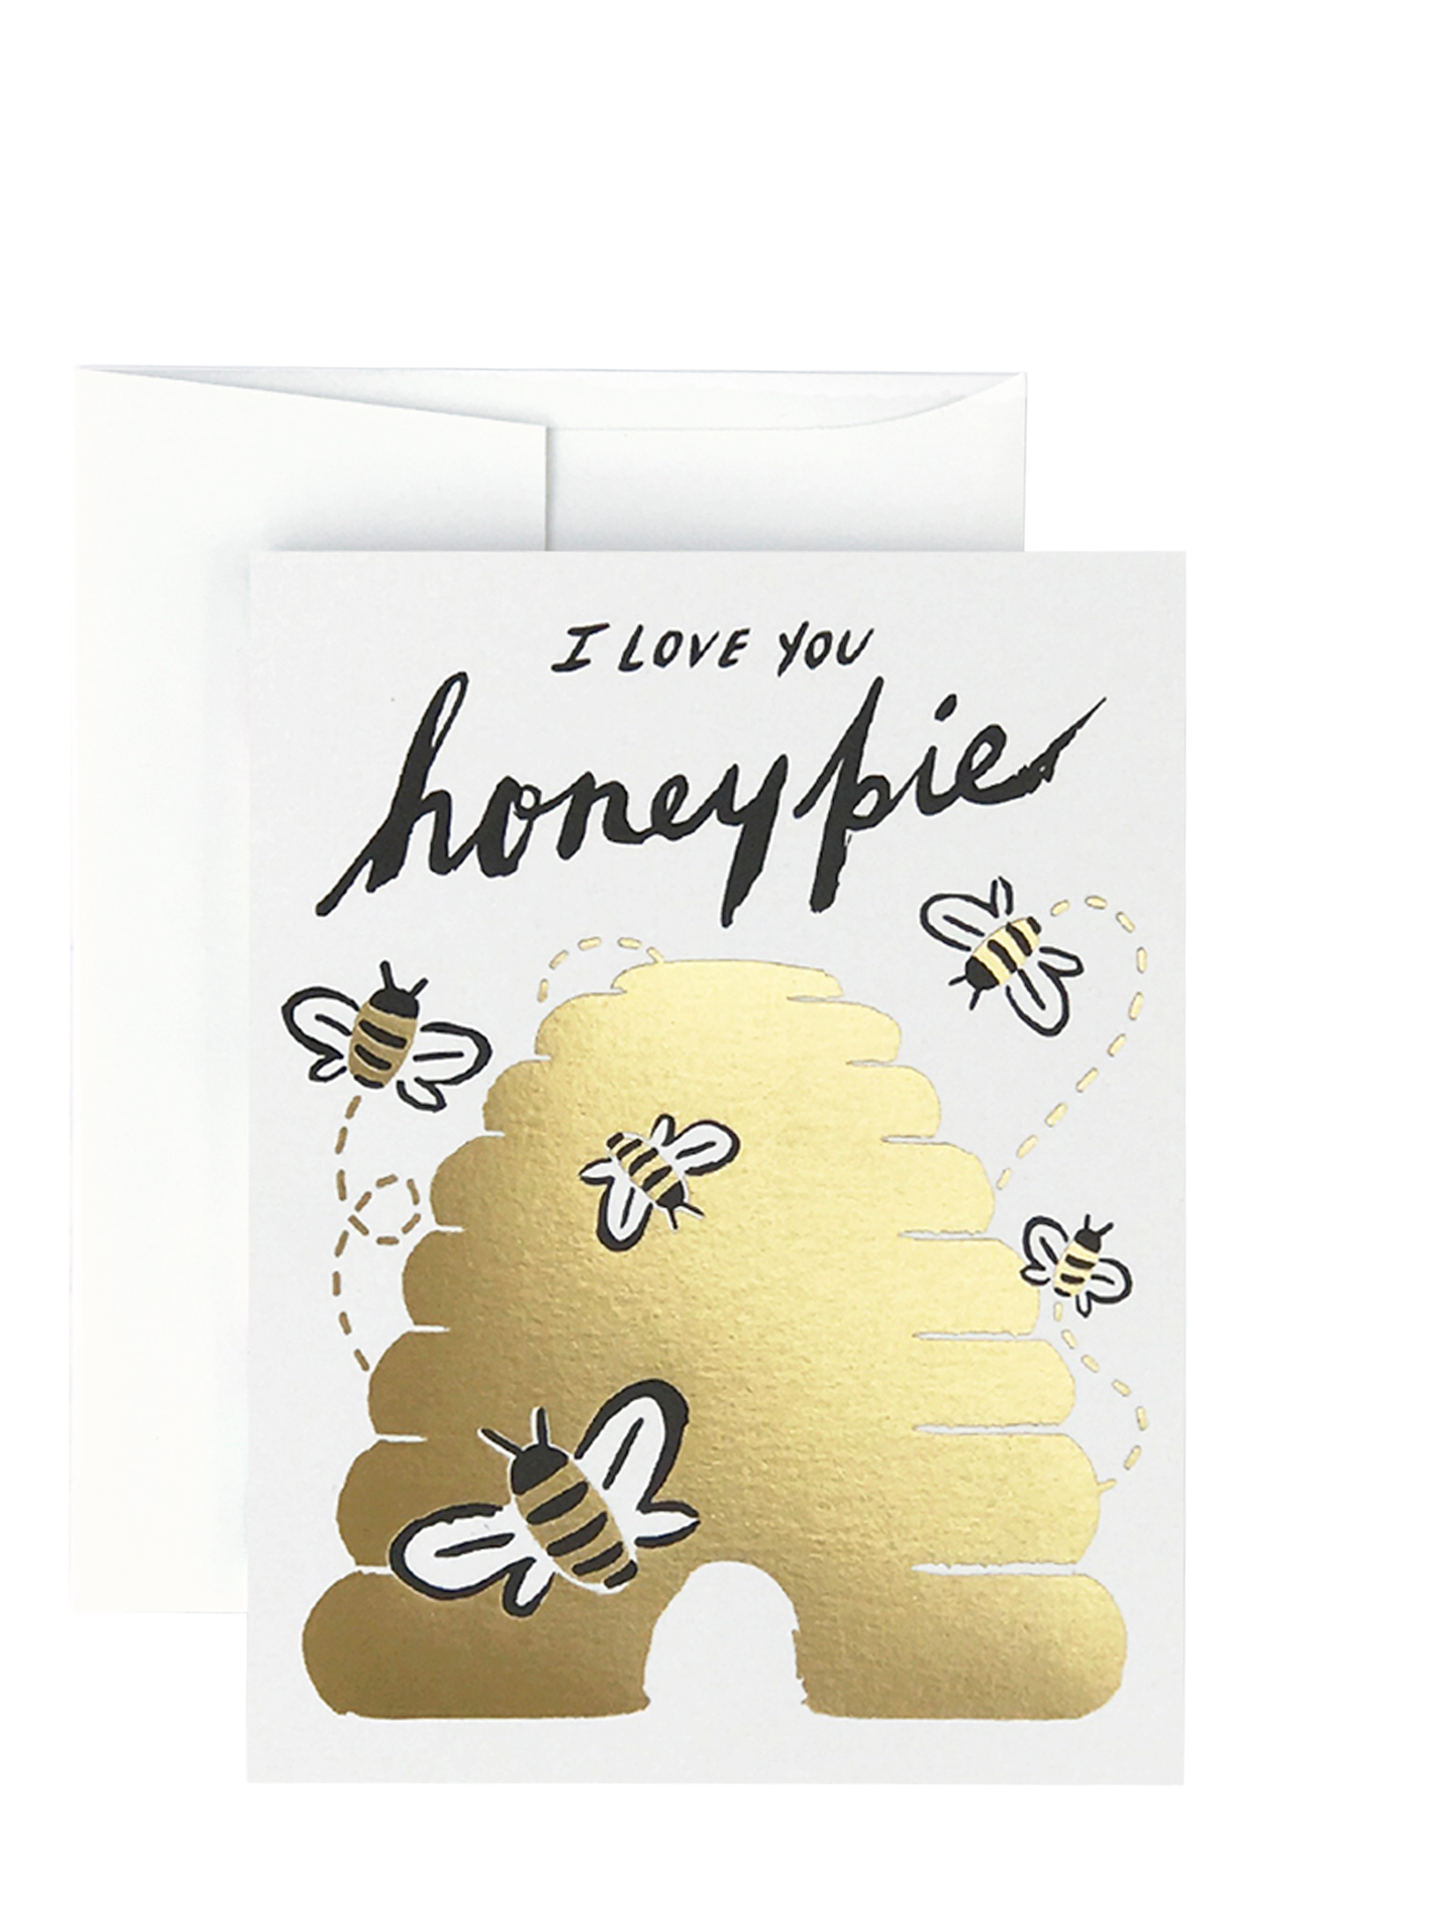 I love you Honey Pie Card